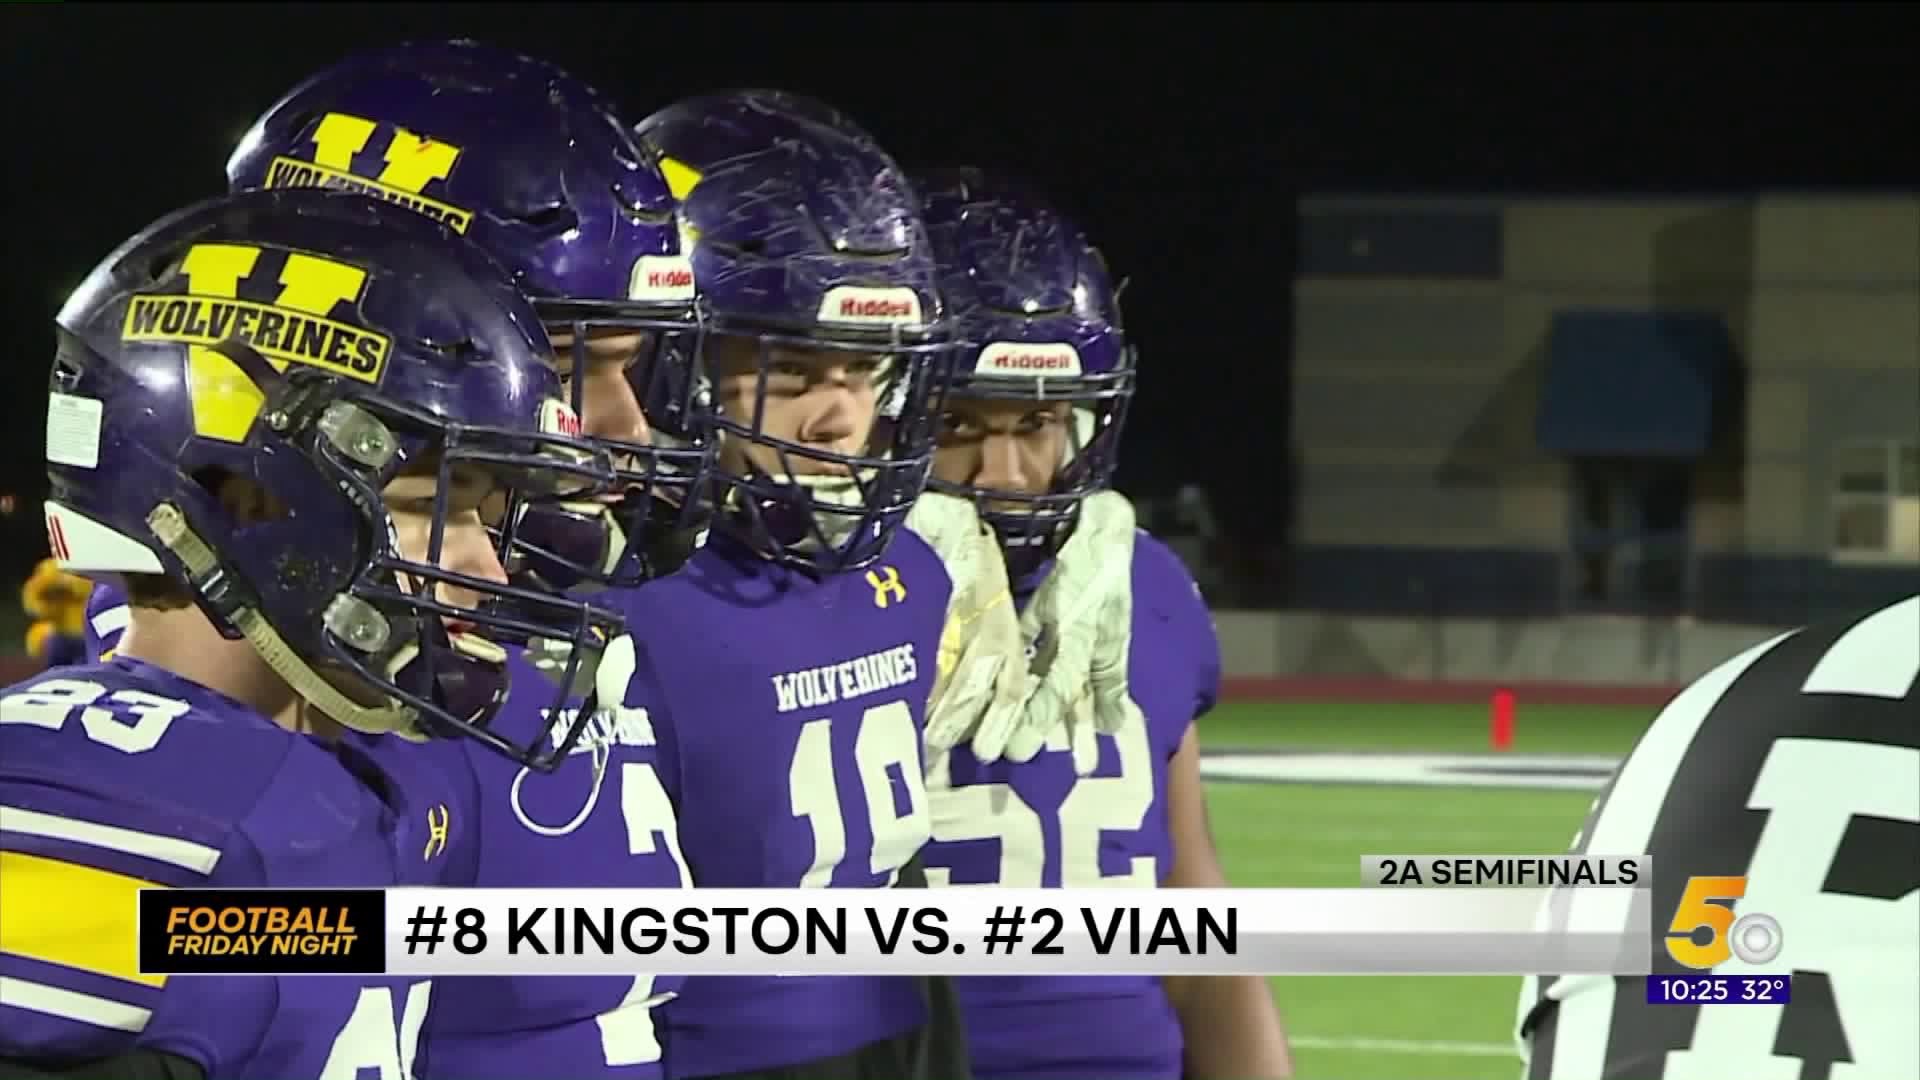 Kingston vs Vian